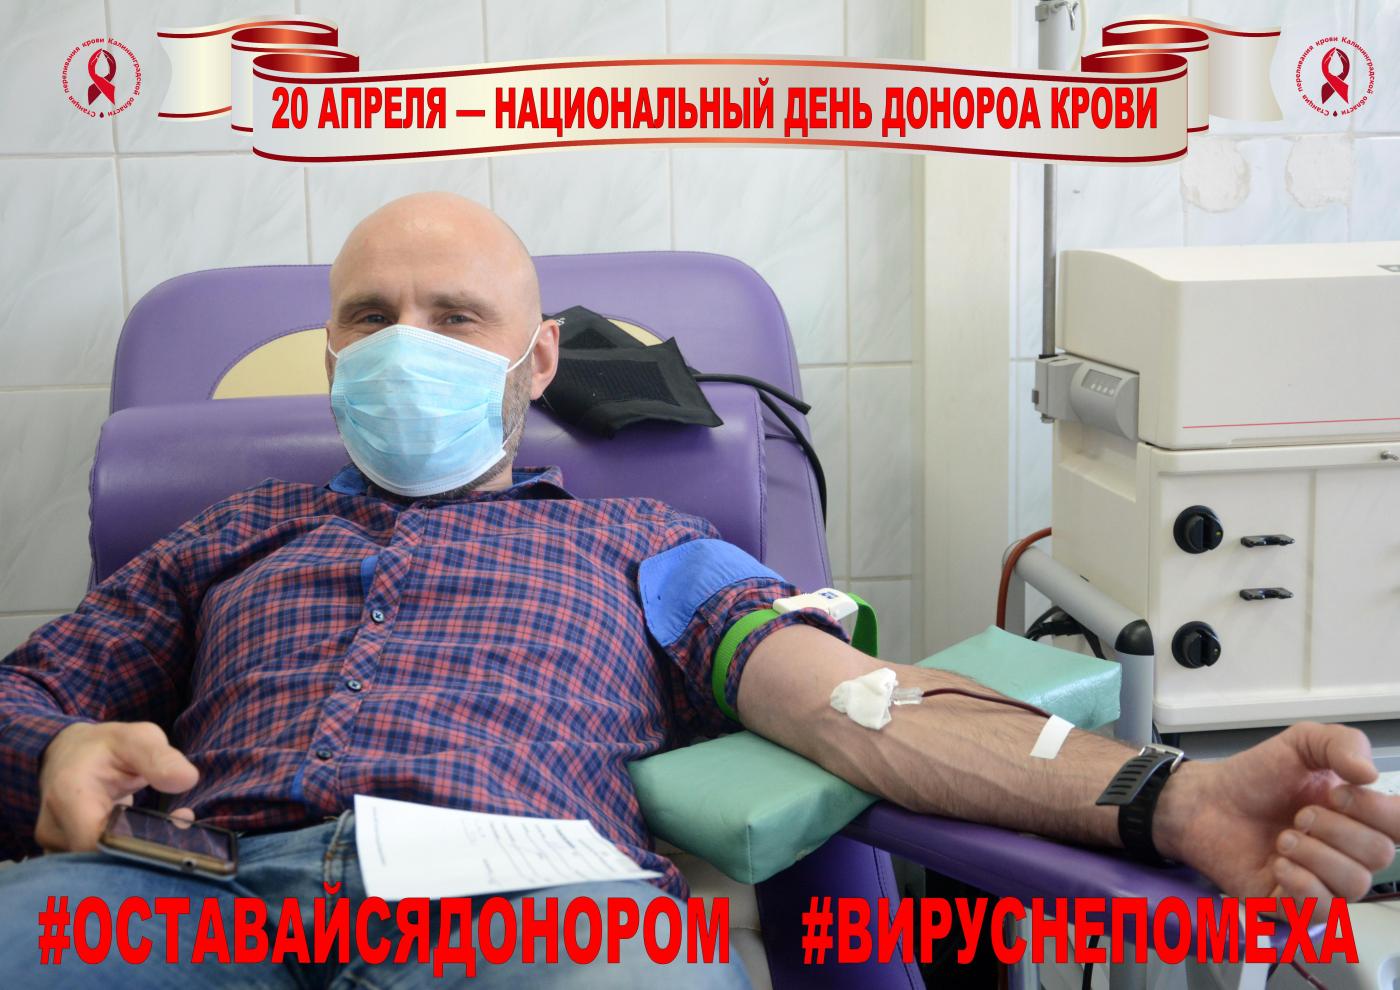 Приглашаем калининградцев на Станцию переливания крови 20 апреля совершить кроводачи